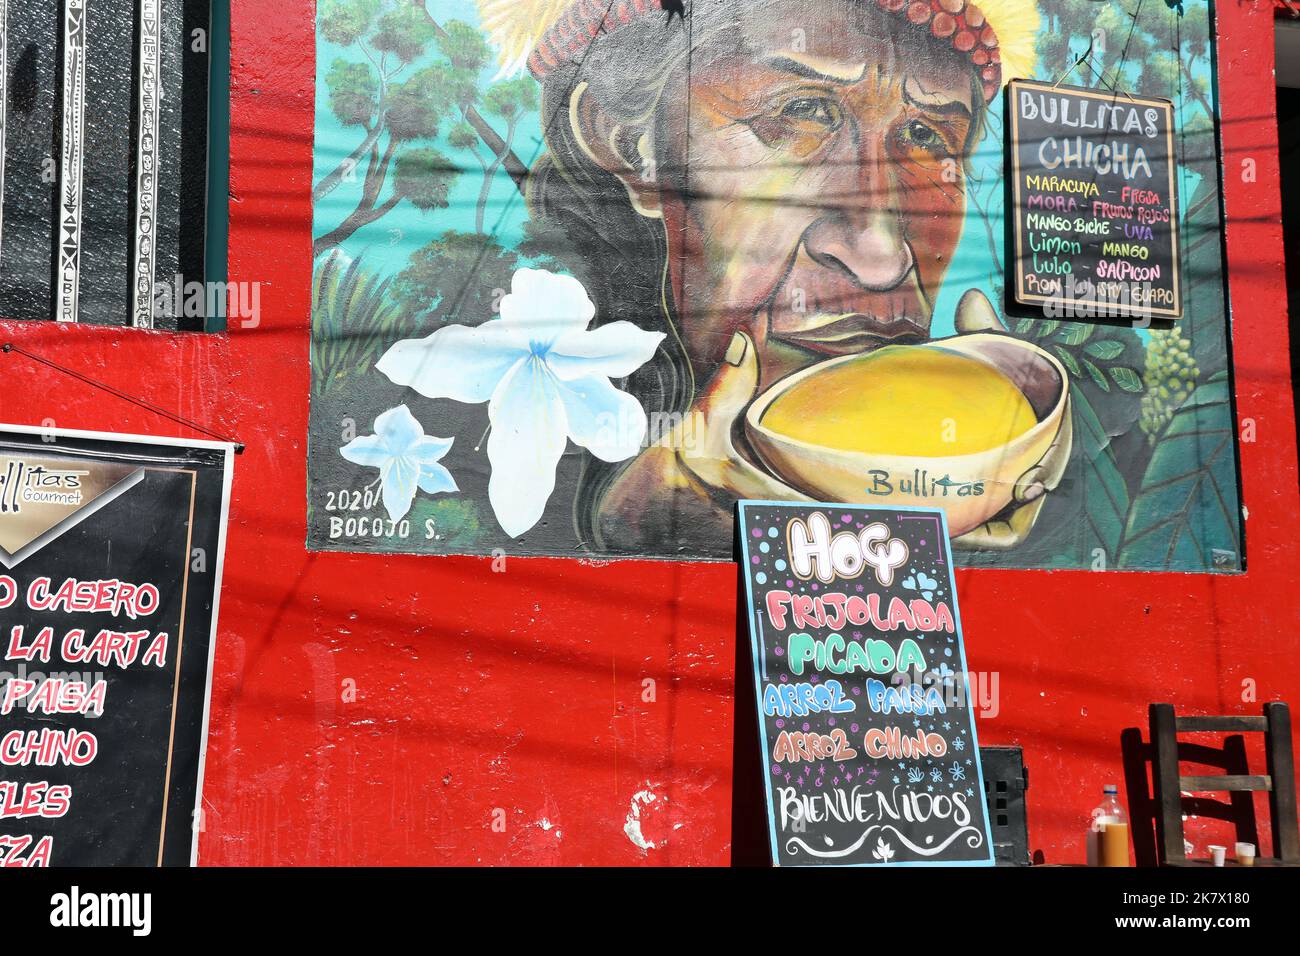 Murale di una donna che beve chicha tradizionale a Bogotà Foto Stock